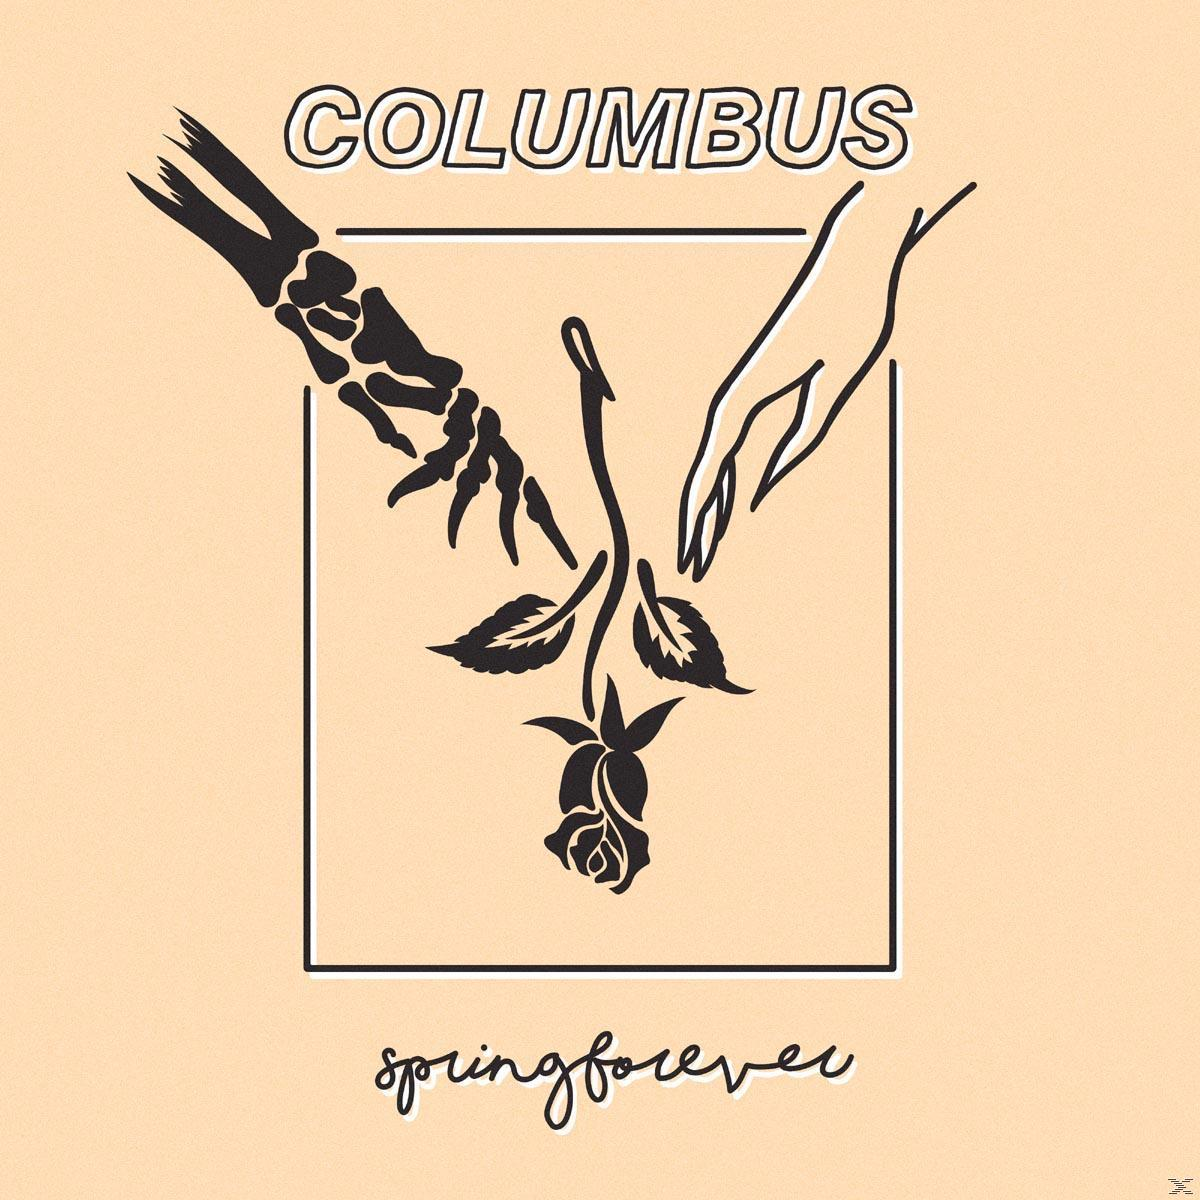 - Spring Columbus (CD) - Forever